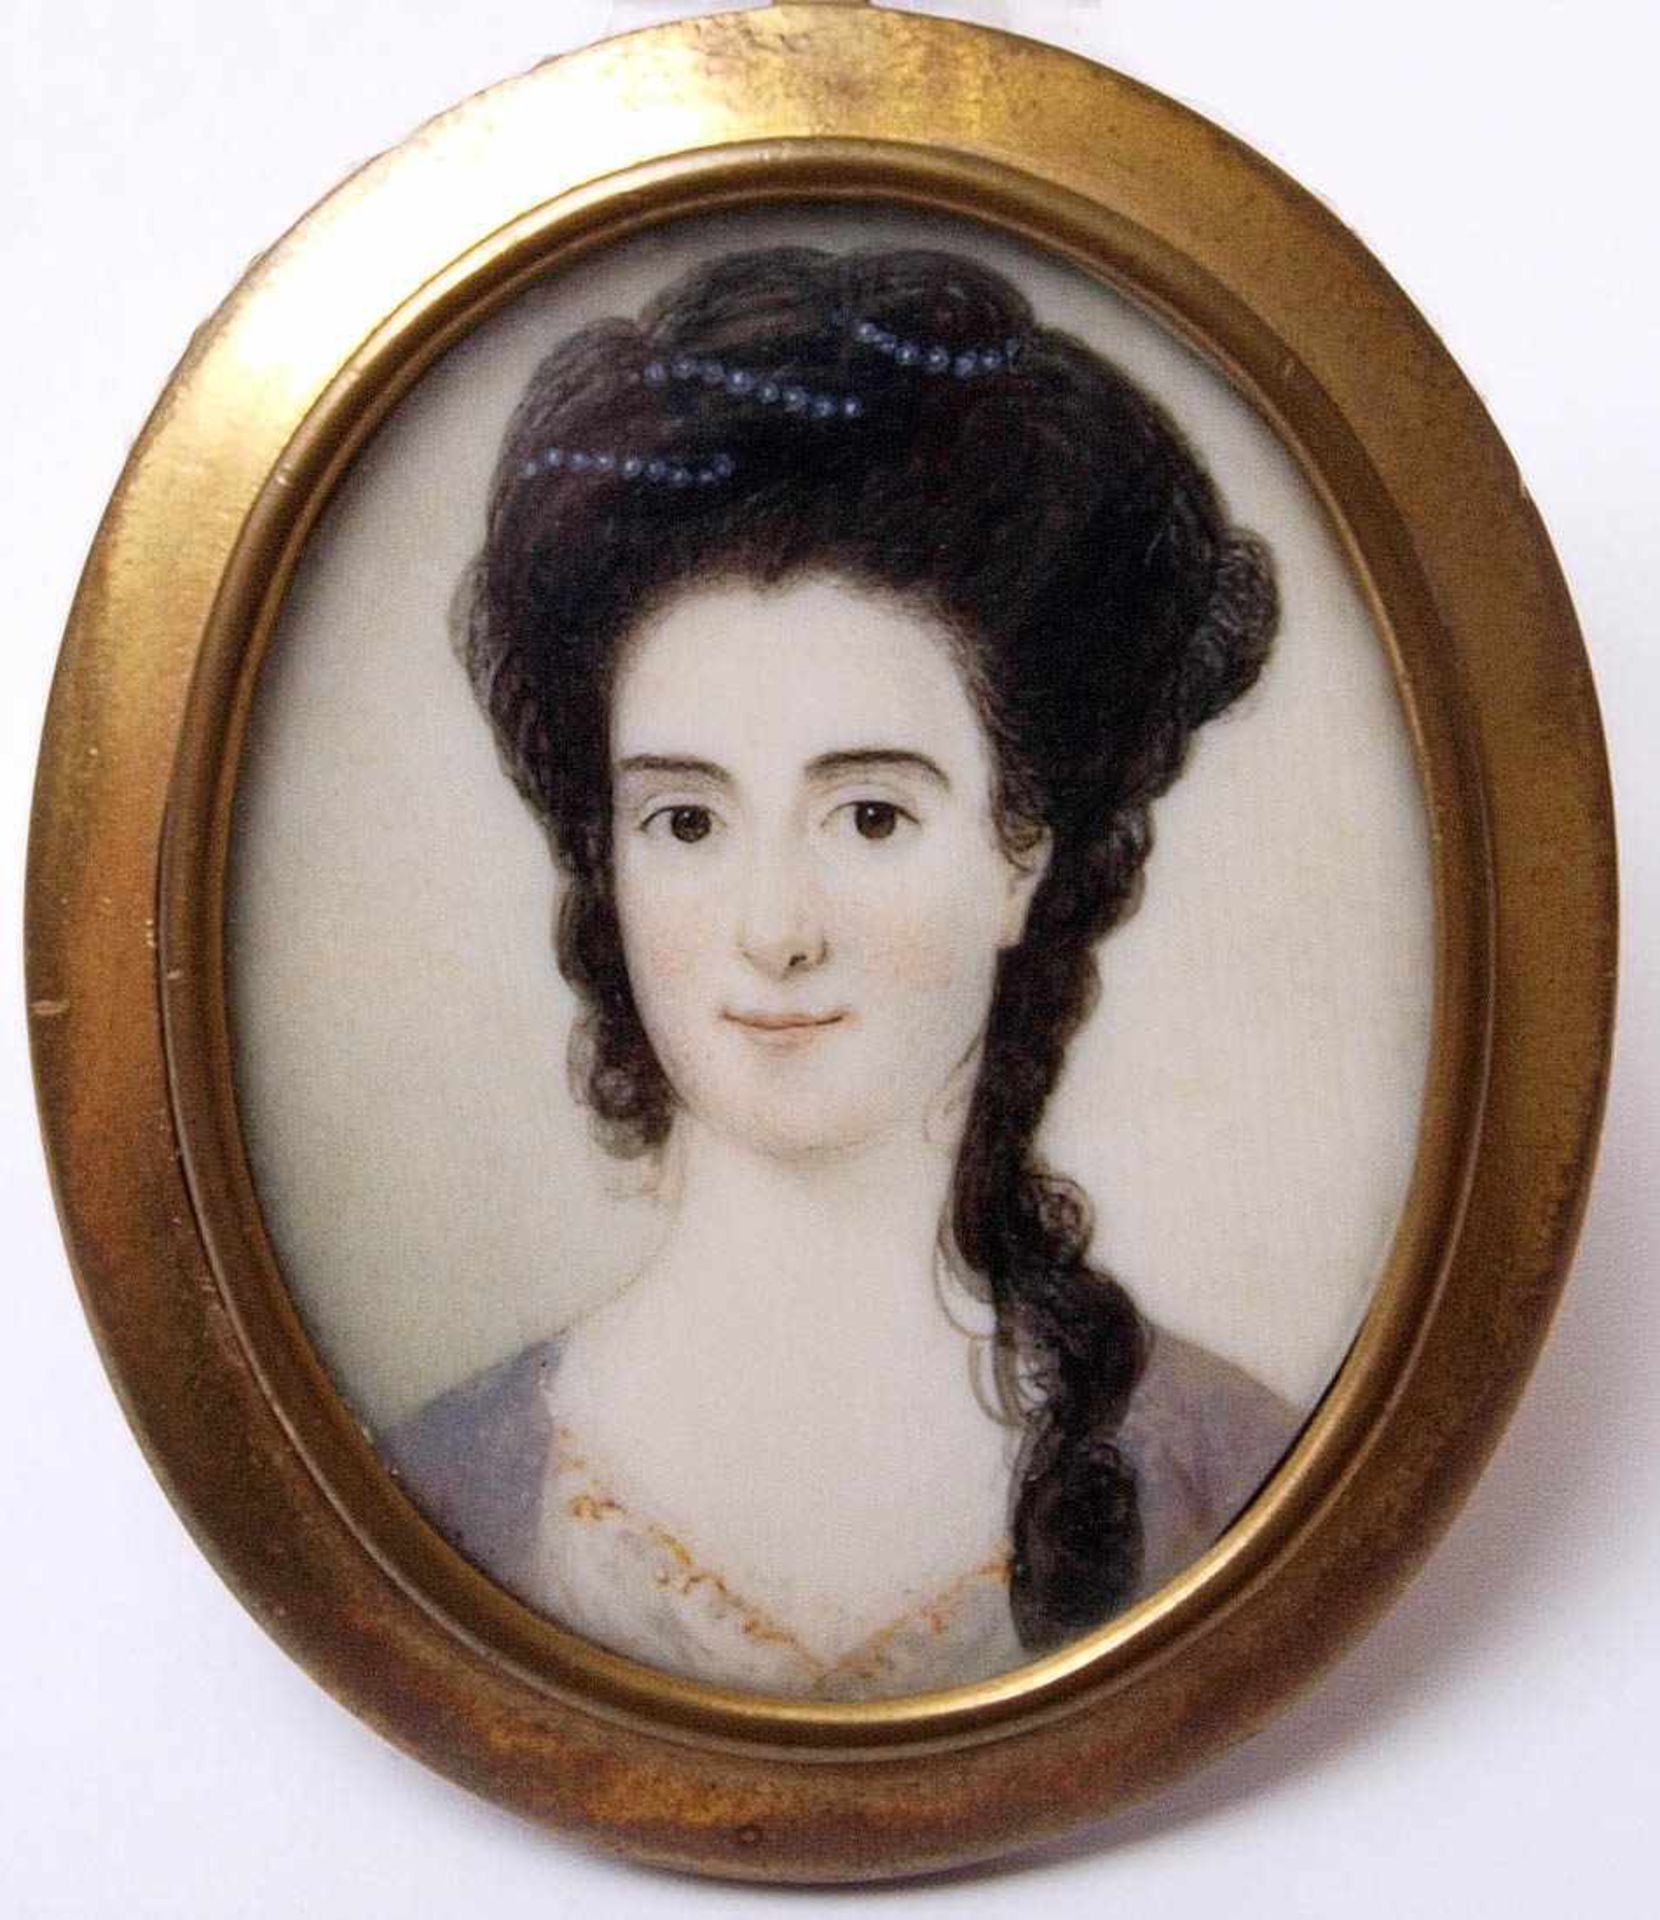 Miniatur, 18./19.Jhdt. Brustbild einer jungen Frau mit Perlenschnüren im gelockten Haar. Sie trägt